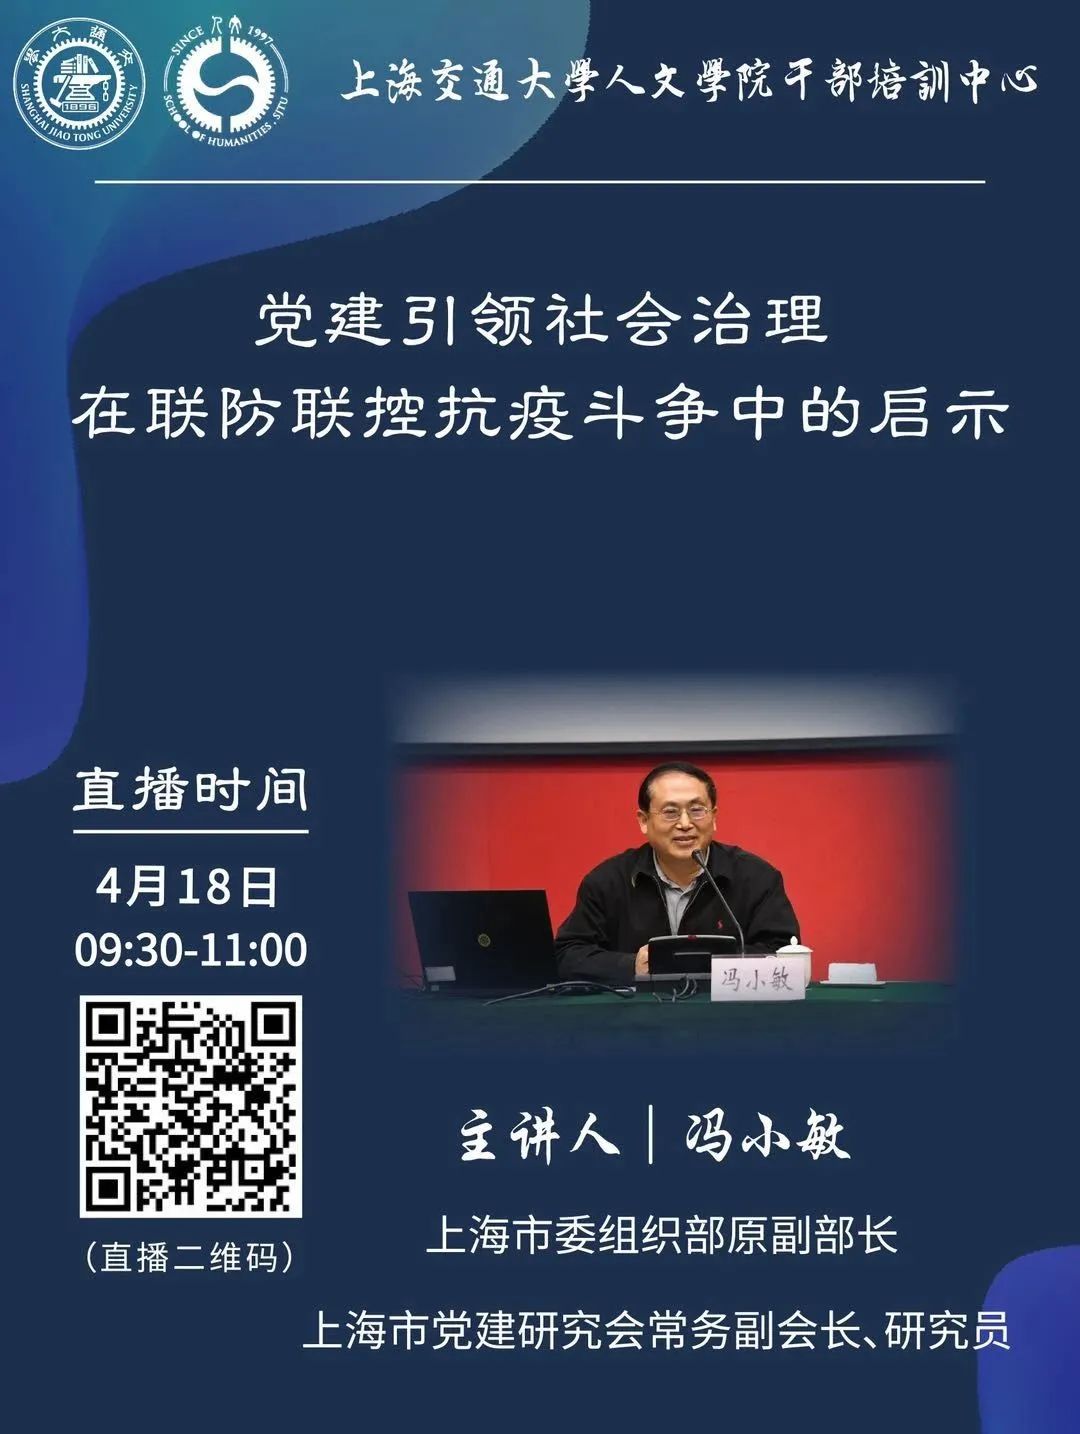 上海科技党建-市委组织部副部长冷伟青赴市研发平台中心调研科技人才工作